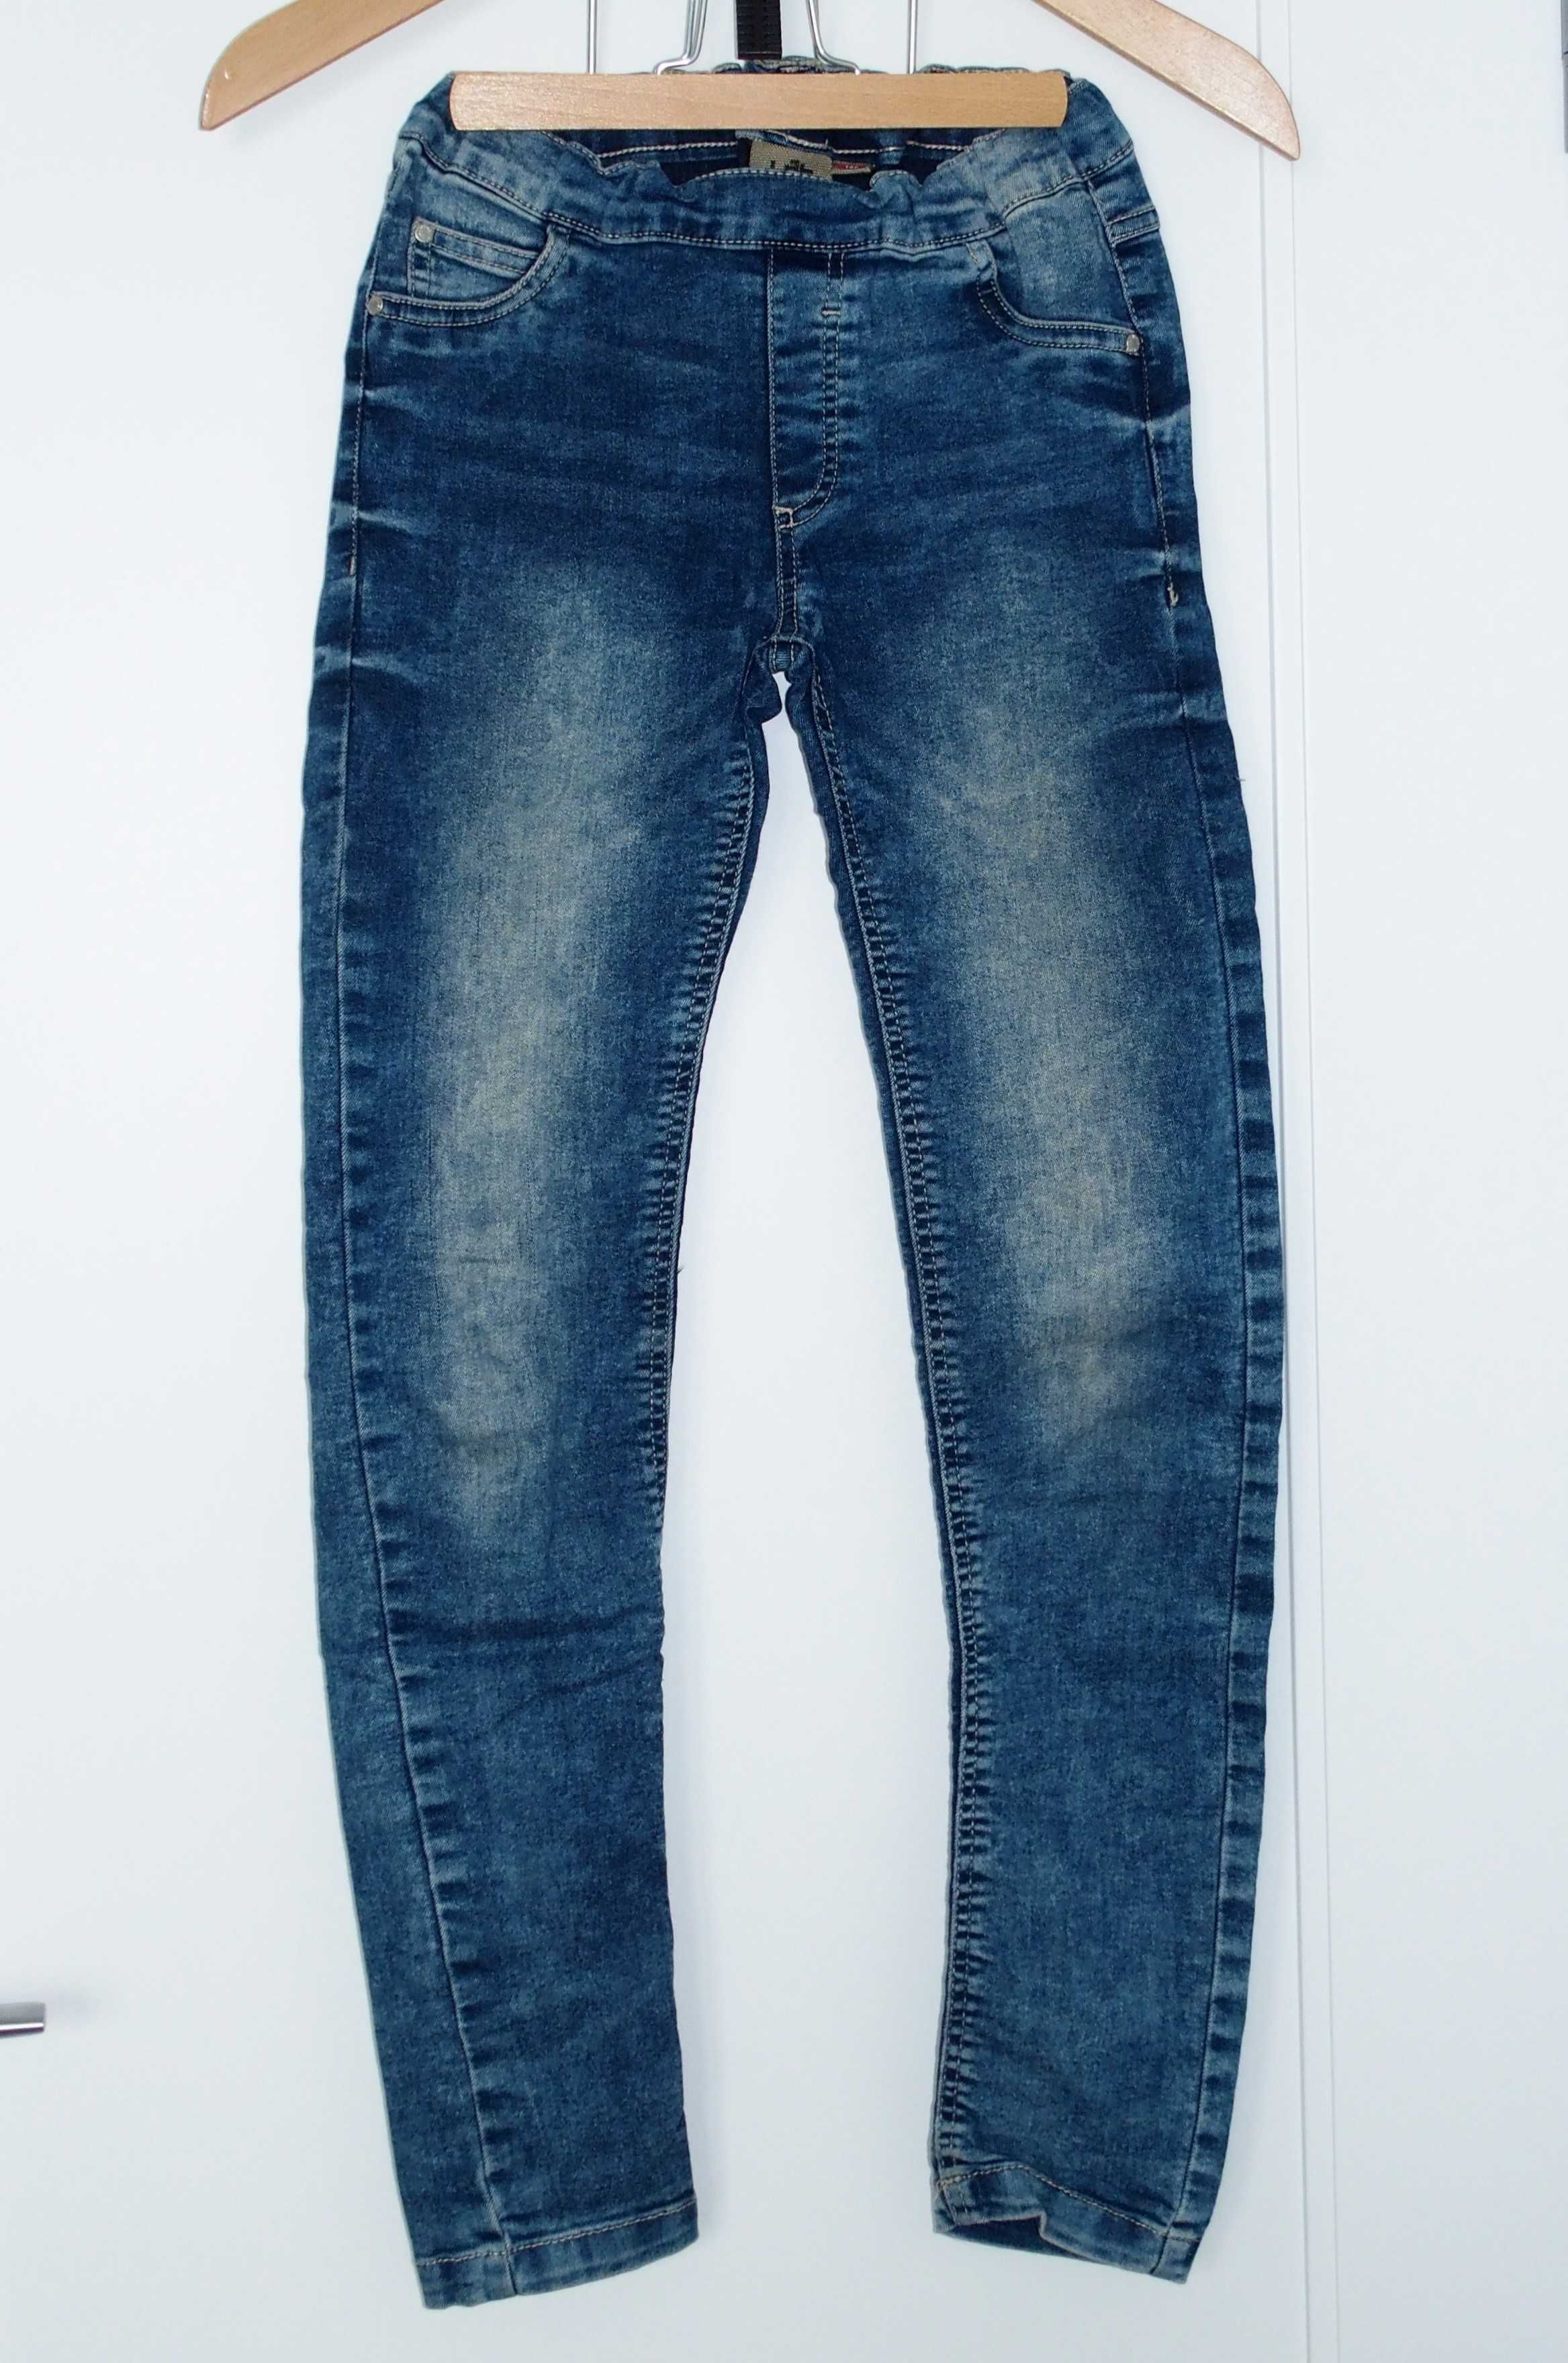 KappAhl 152 joggery SPODNIE jeansowe miękki jeans * 12 lat